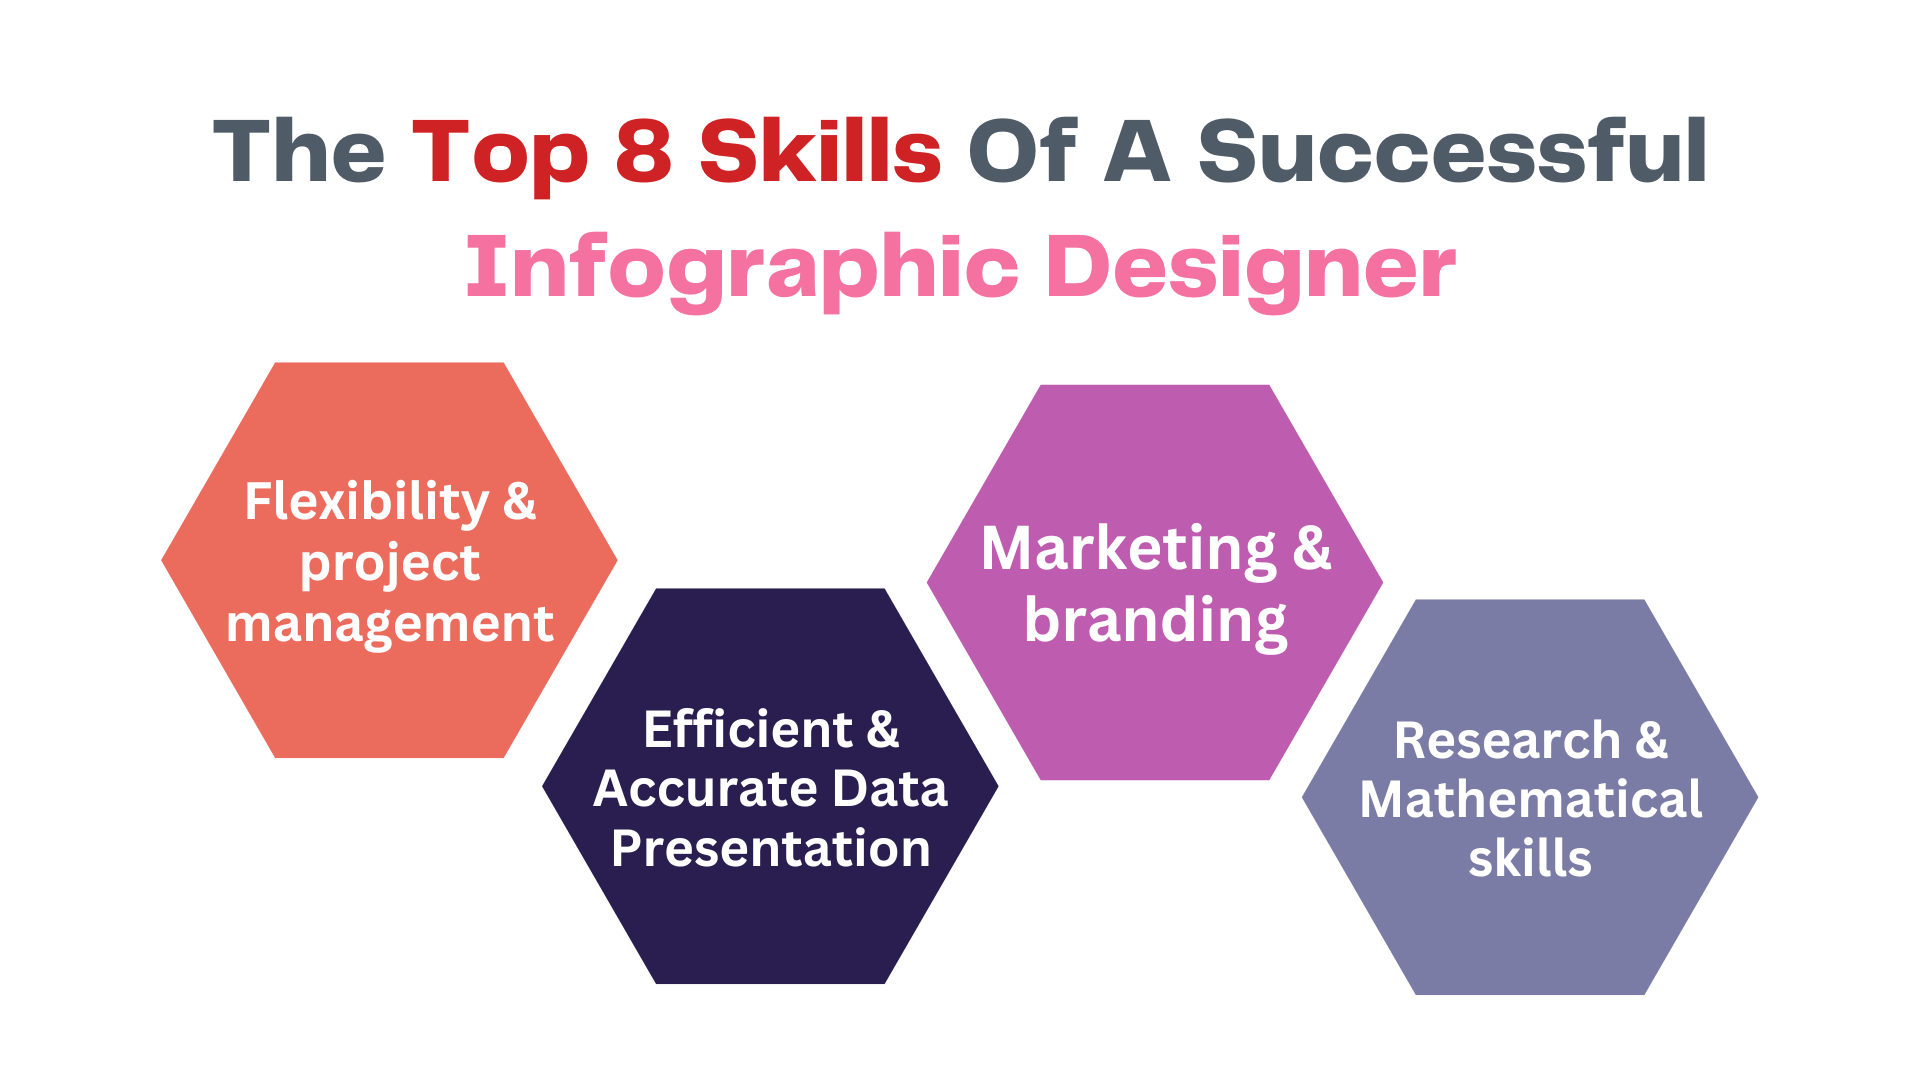 Infographic designer